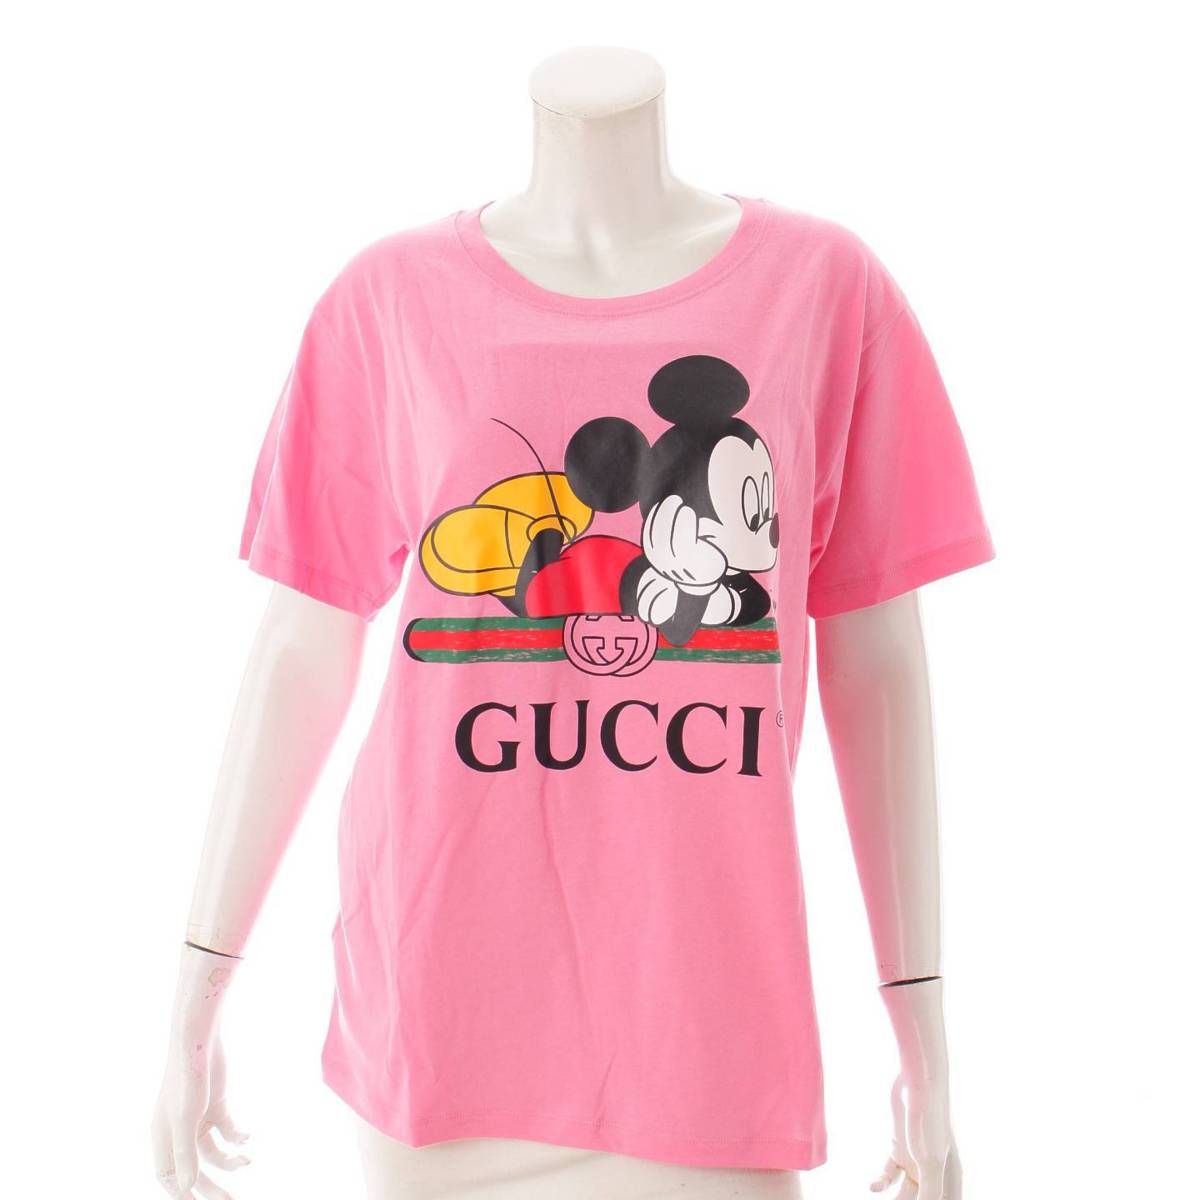 グッチ(Gucci) ディズニーコラボ オーバーサイズ Tシャツ ミッキーマウス 492347 ピンク XS